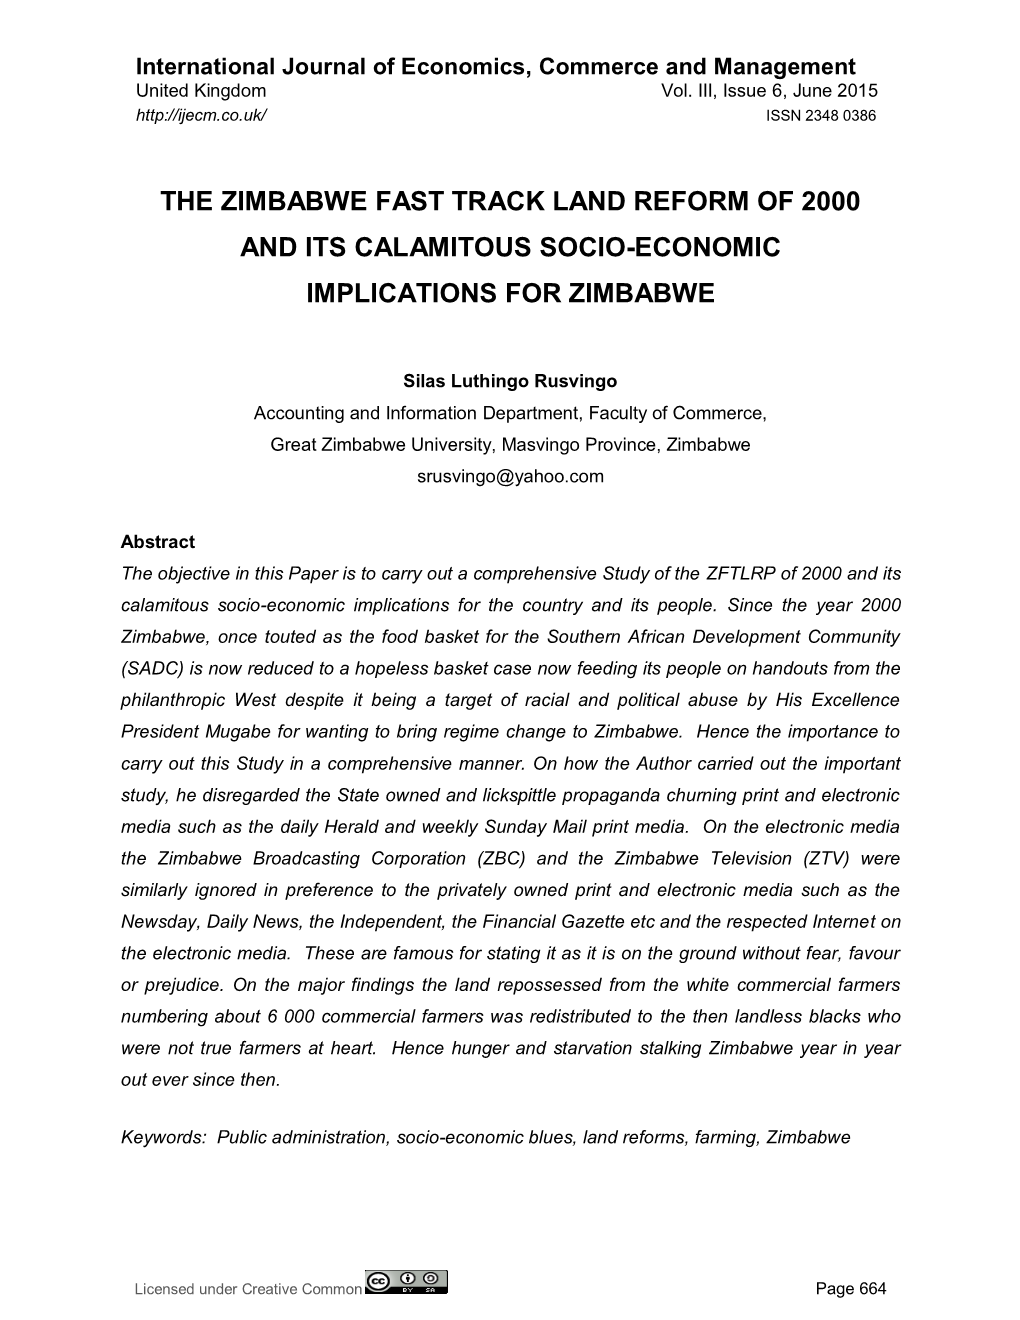 The Zimbabwe Fast Track Land Reform of 2000 and Its Calamitous Socio-Economic Implications for Zimbabwe